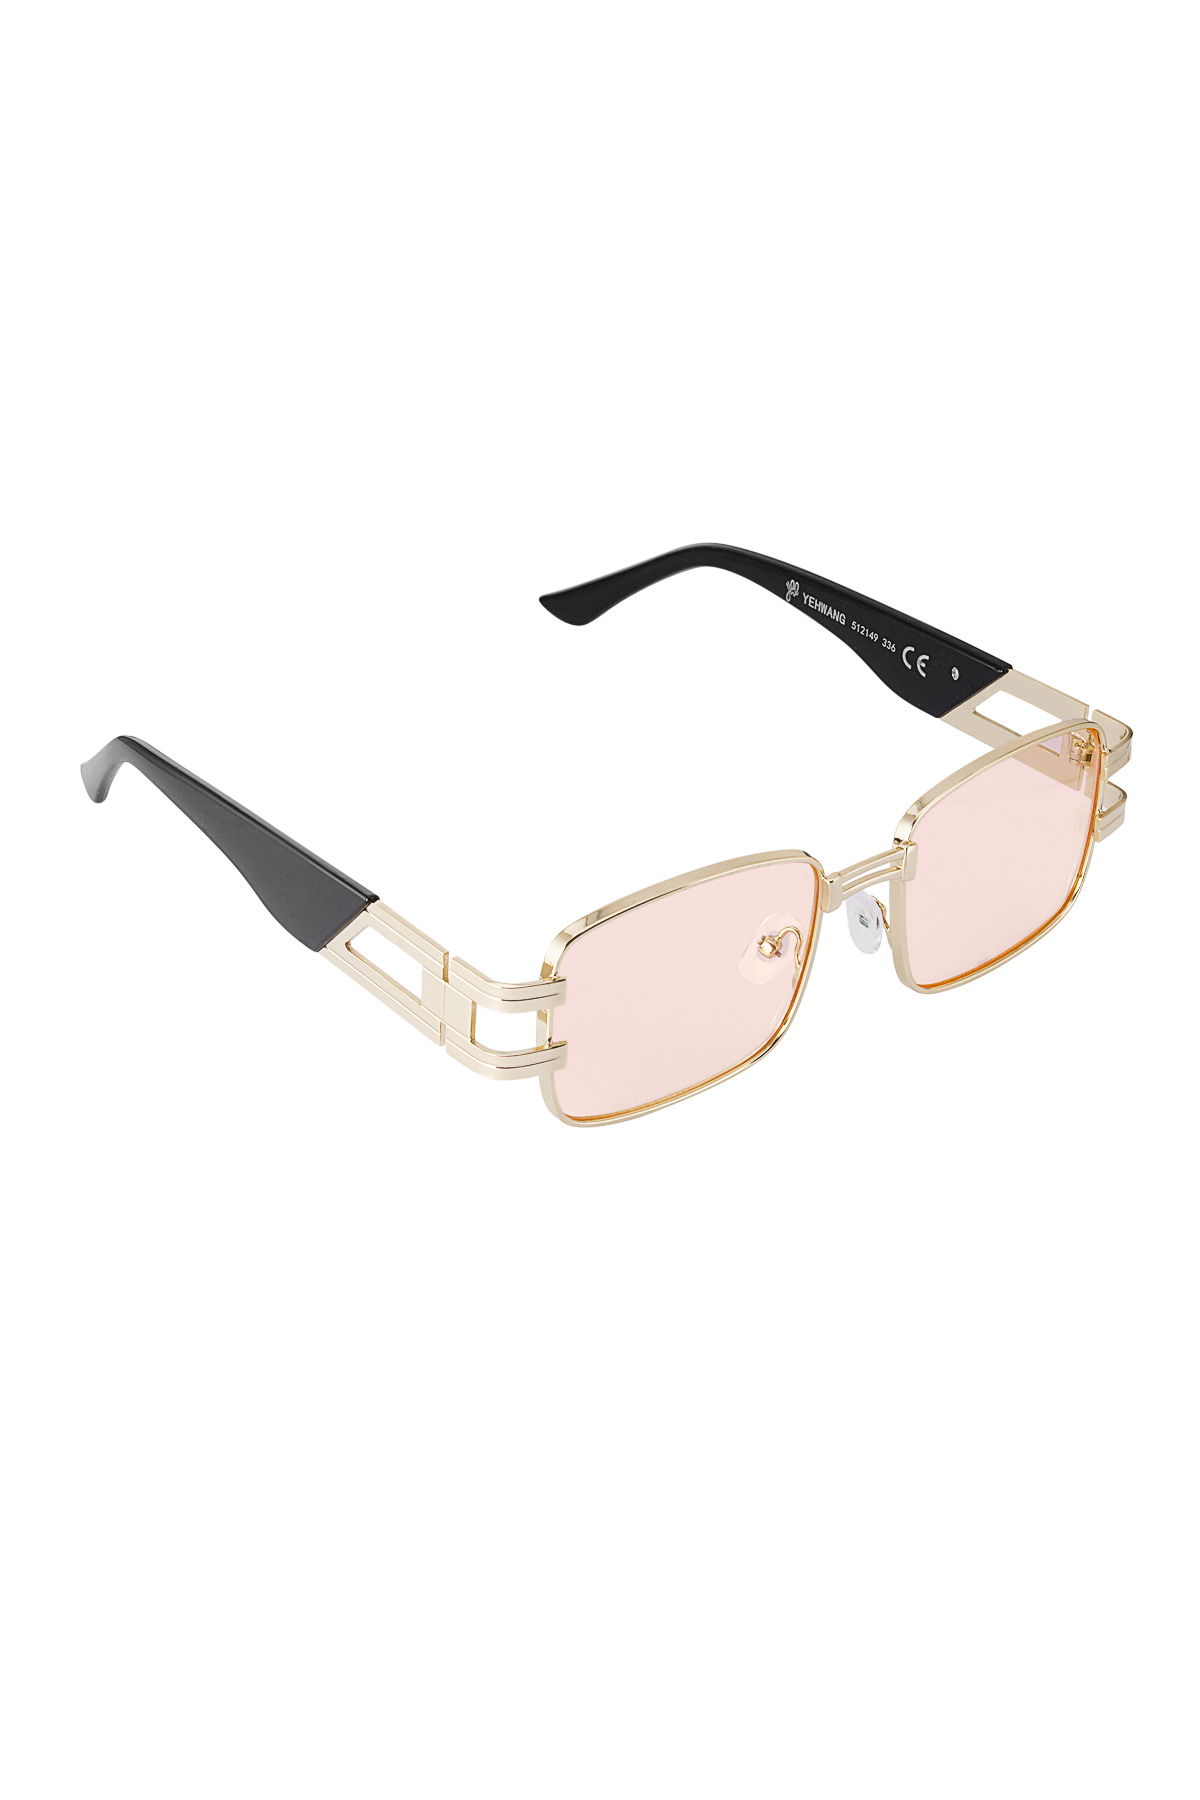 Gafas de sol simple metal esencial - oro rosa h5 